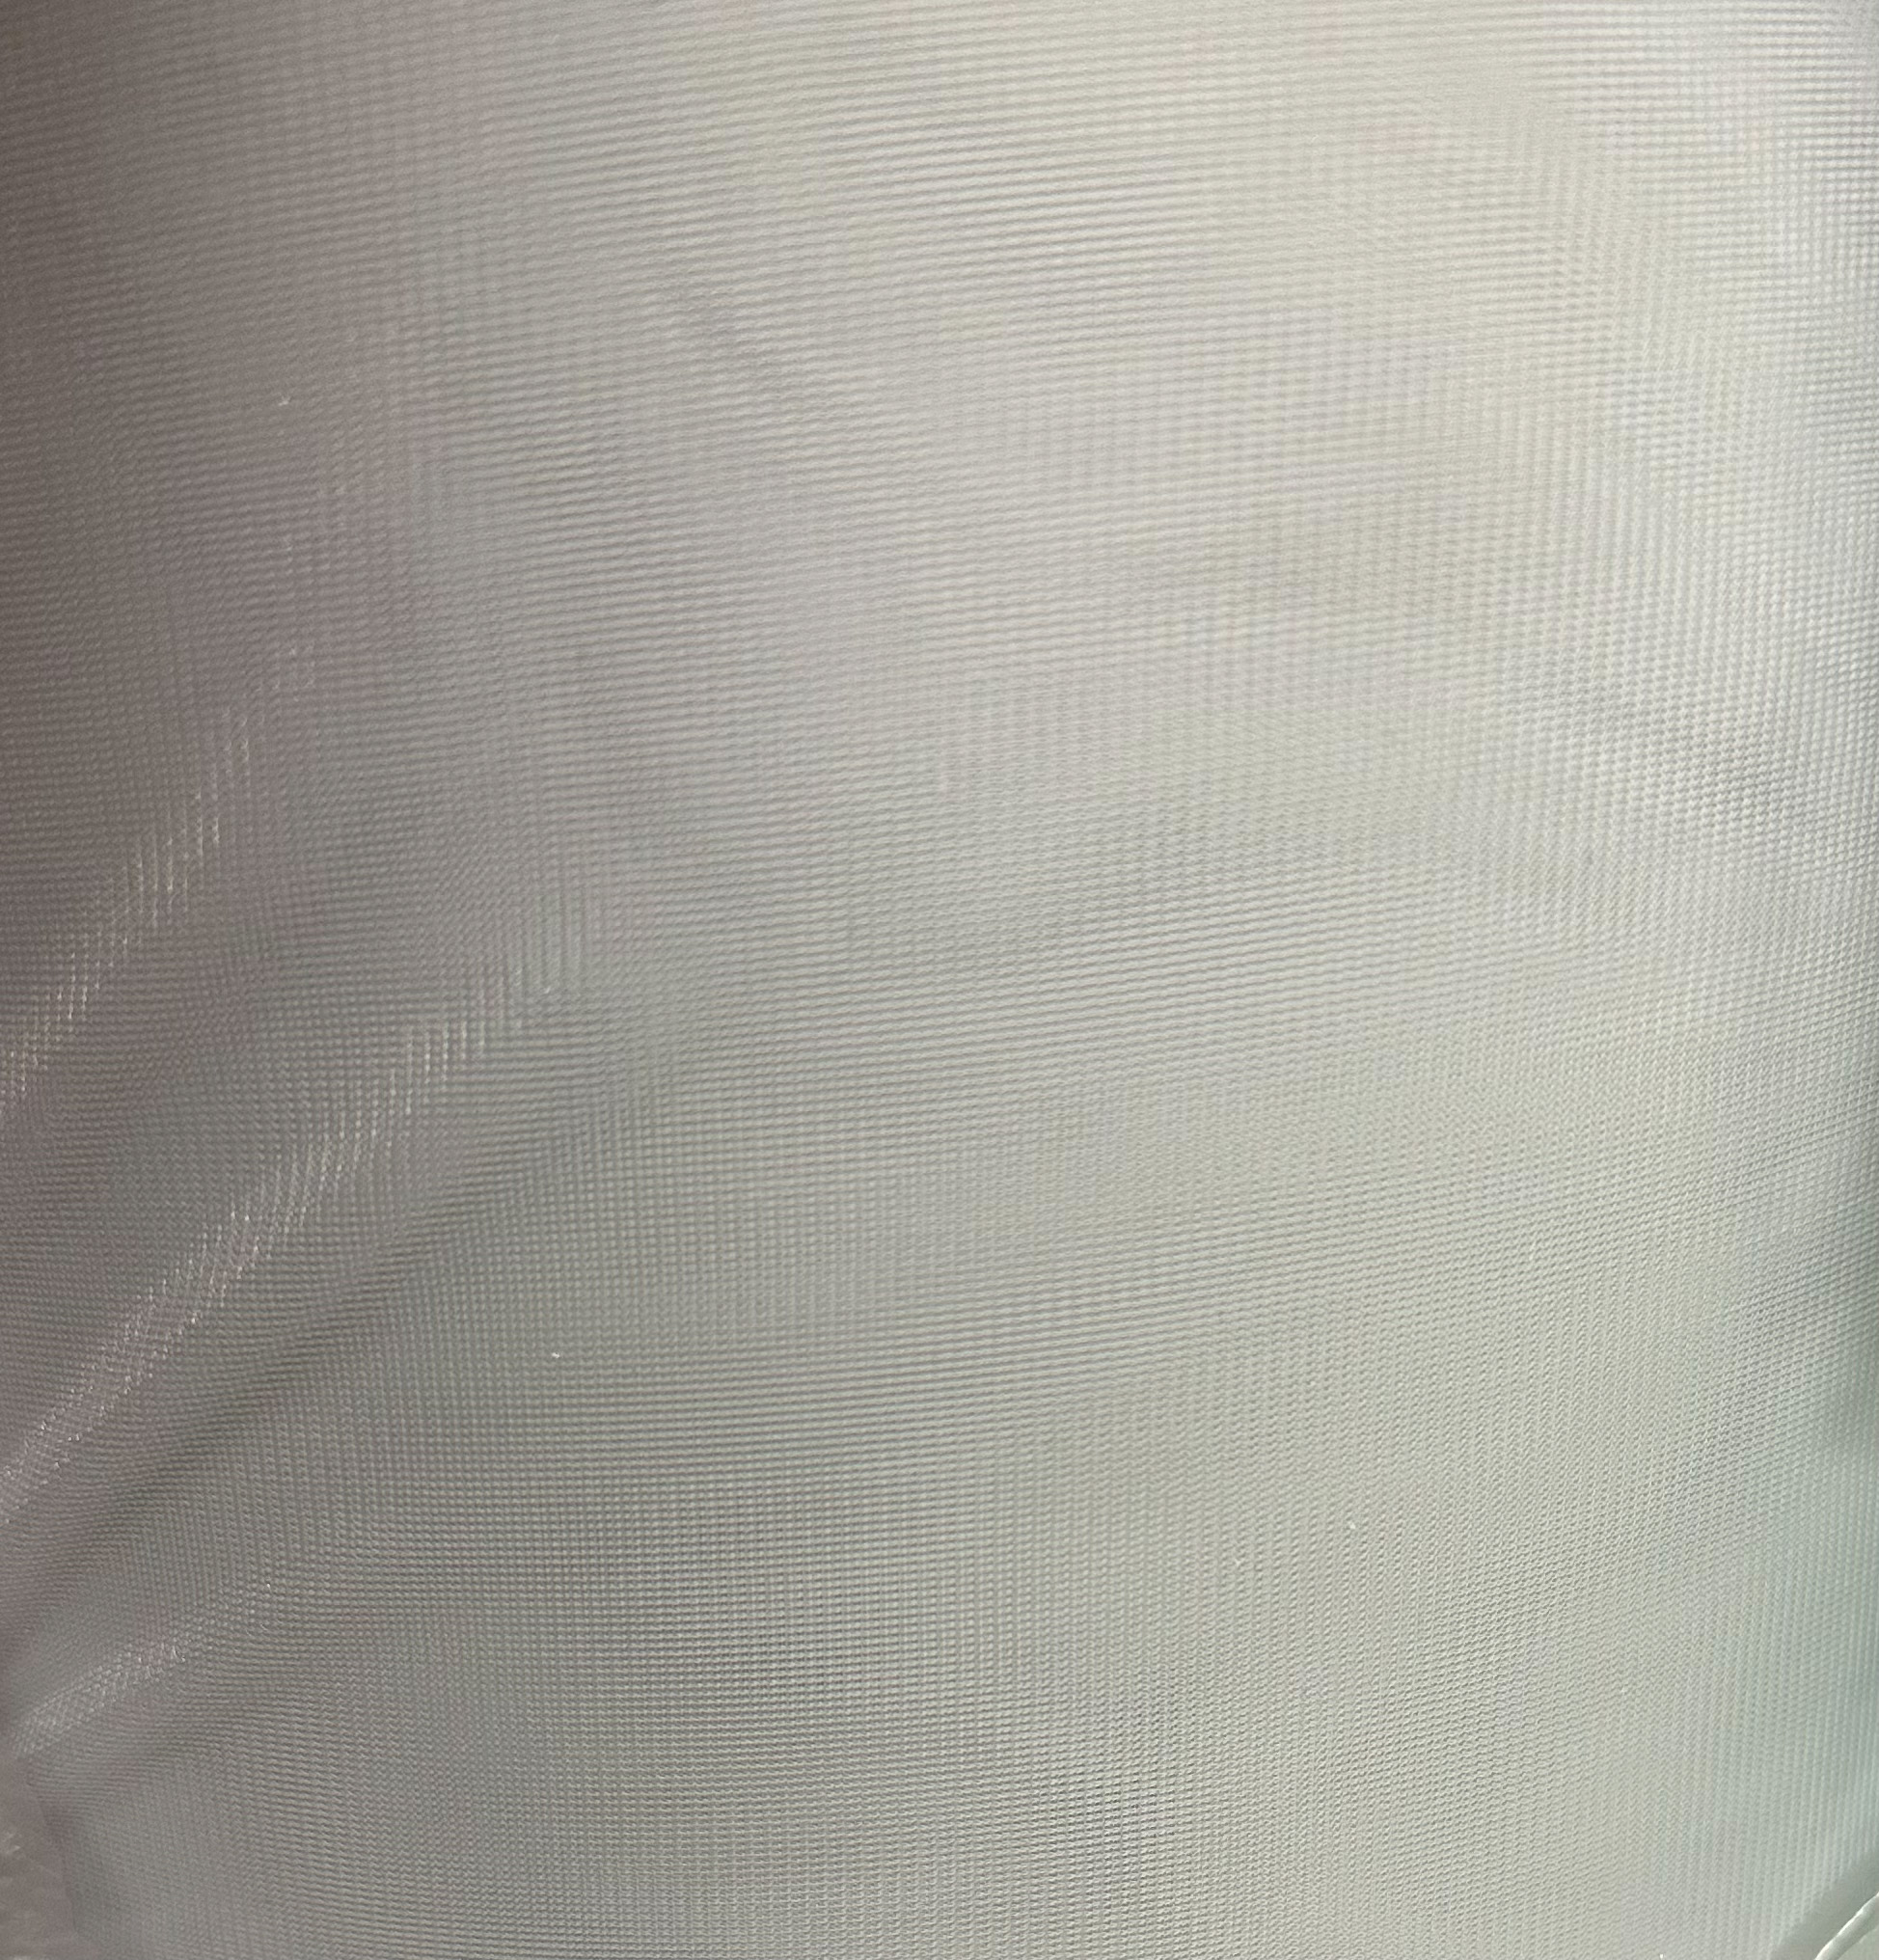 Light Grey Nylon Chiffon Fabric